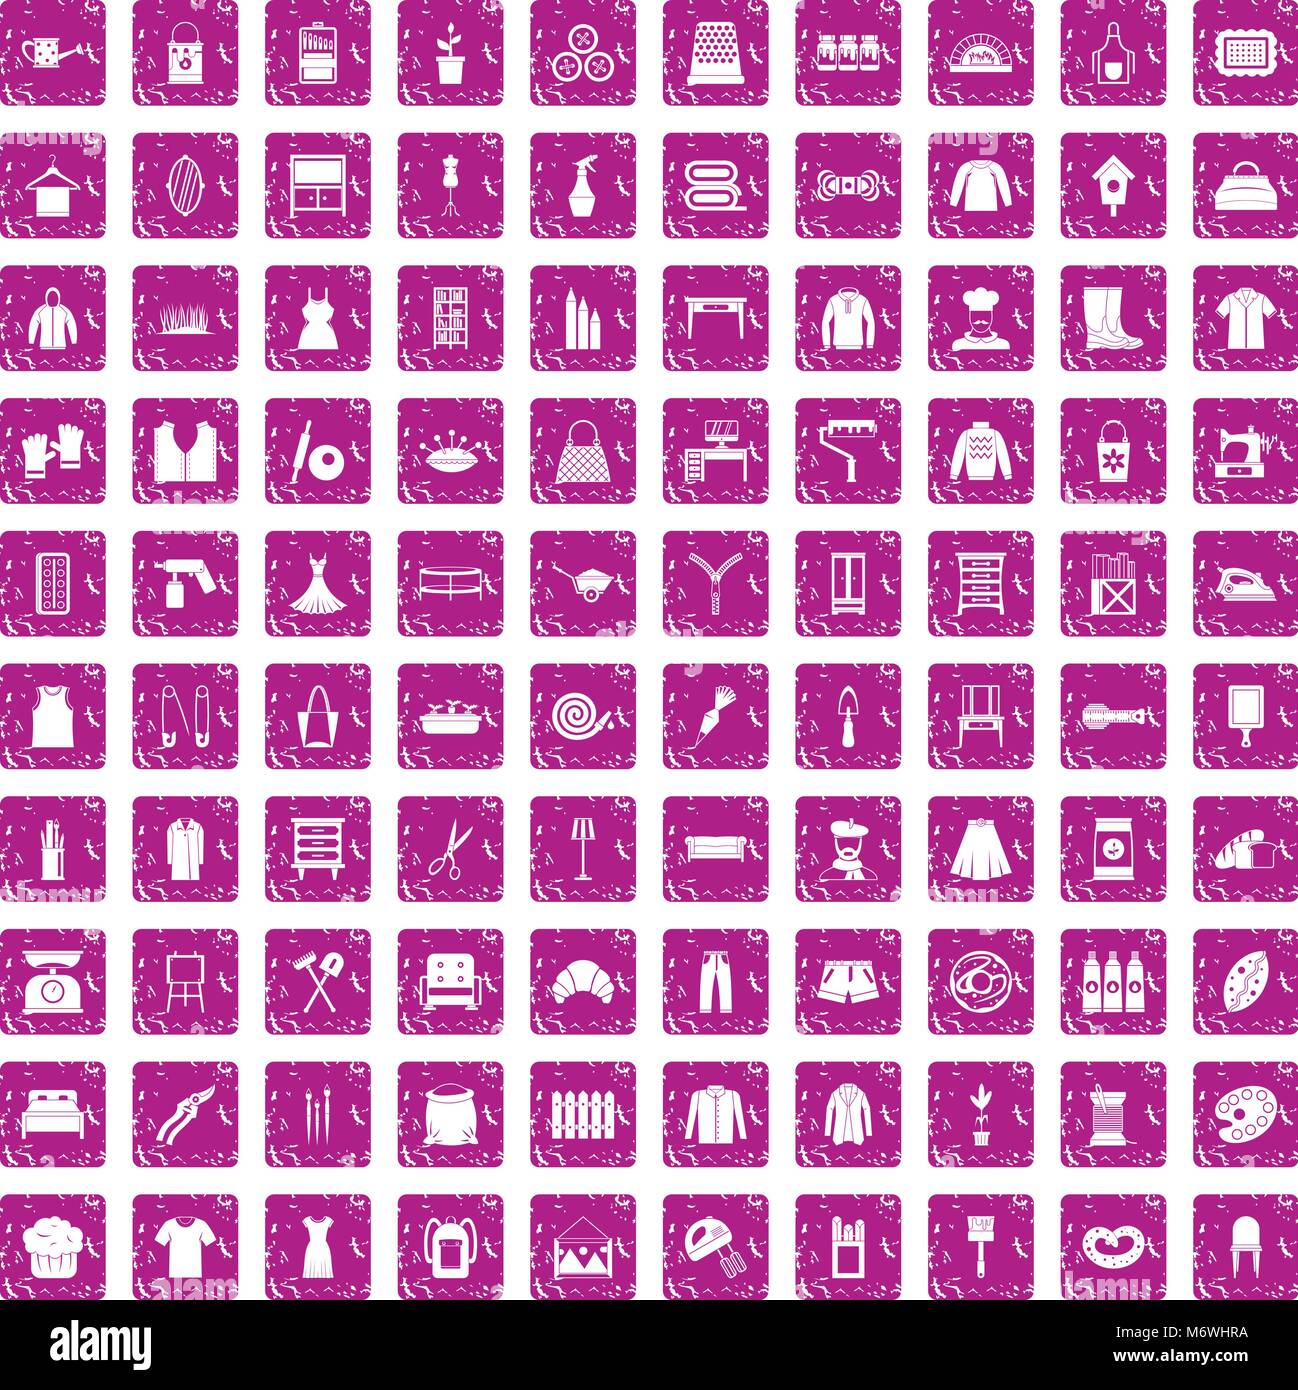 100 Handarbeit Icons Set grunge Rosa Stock Vektor